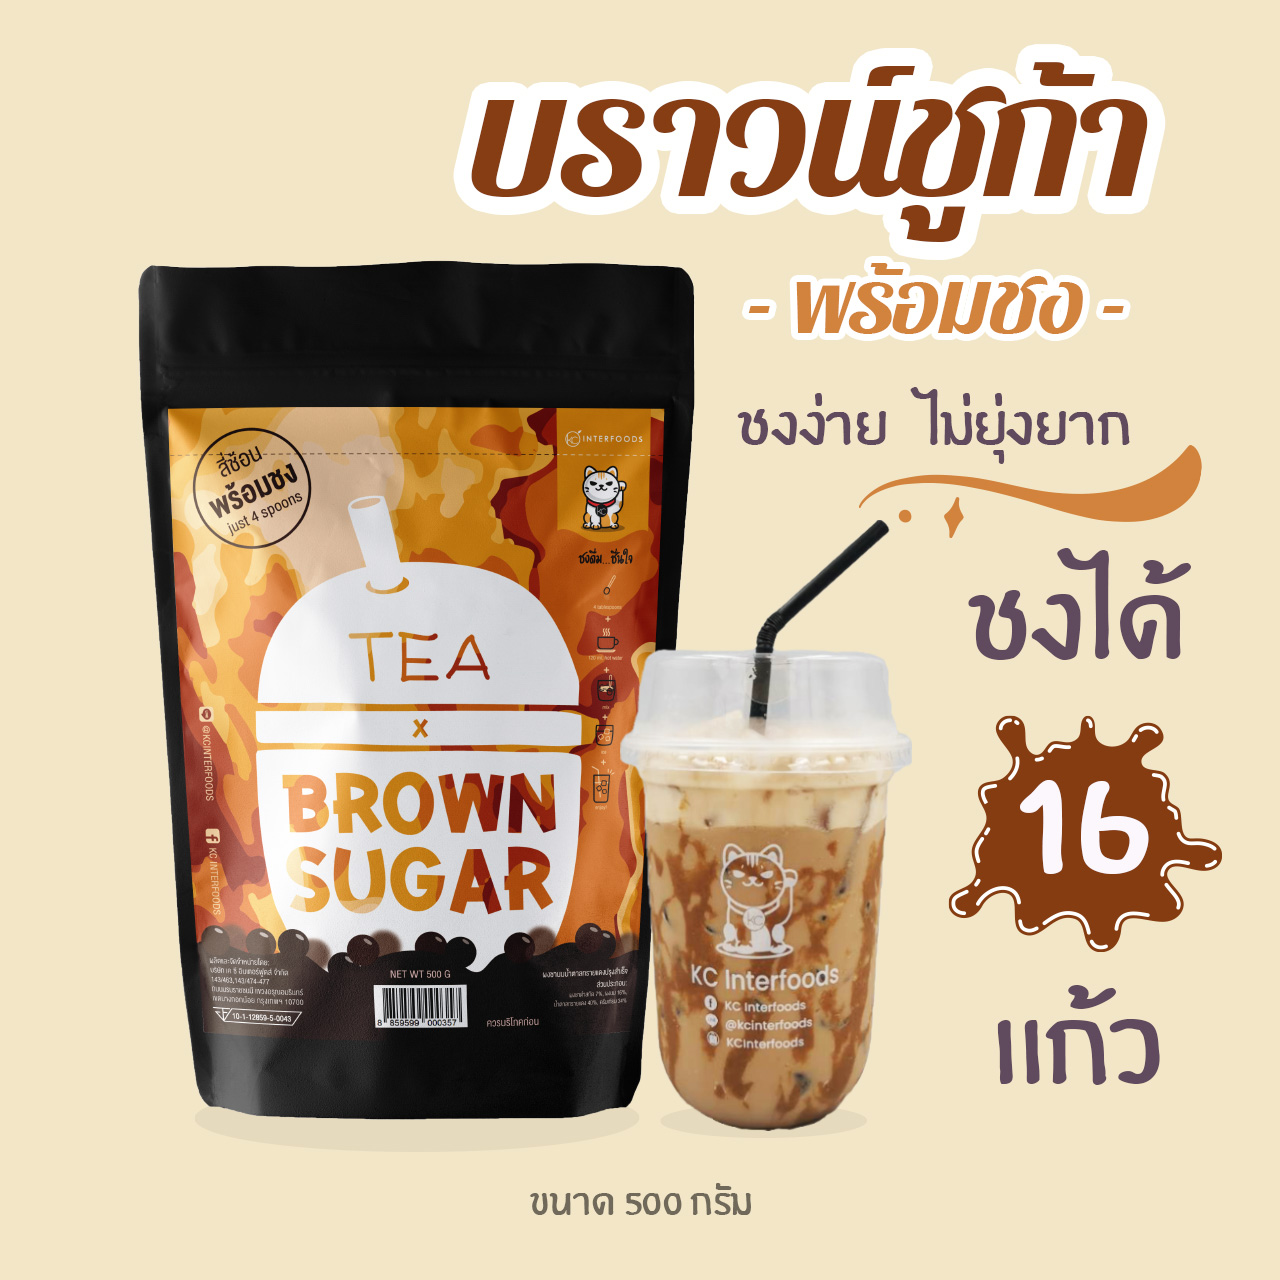 ผงชานม สูตรบราวน์ชูก้าพร้อมชง 500 กรัม (Instant Brown Sugar Milk Tea Powder)